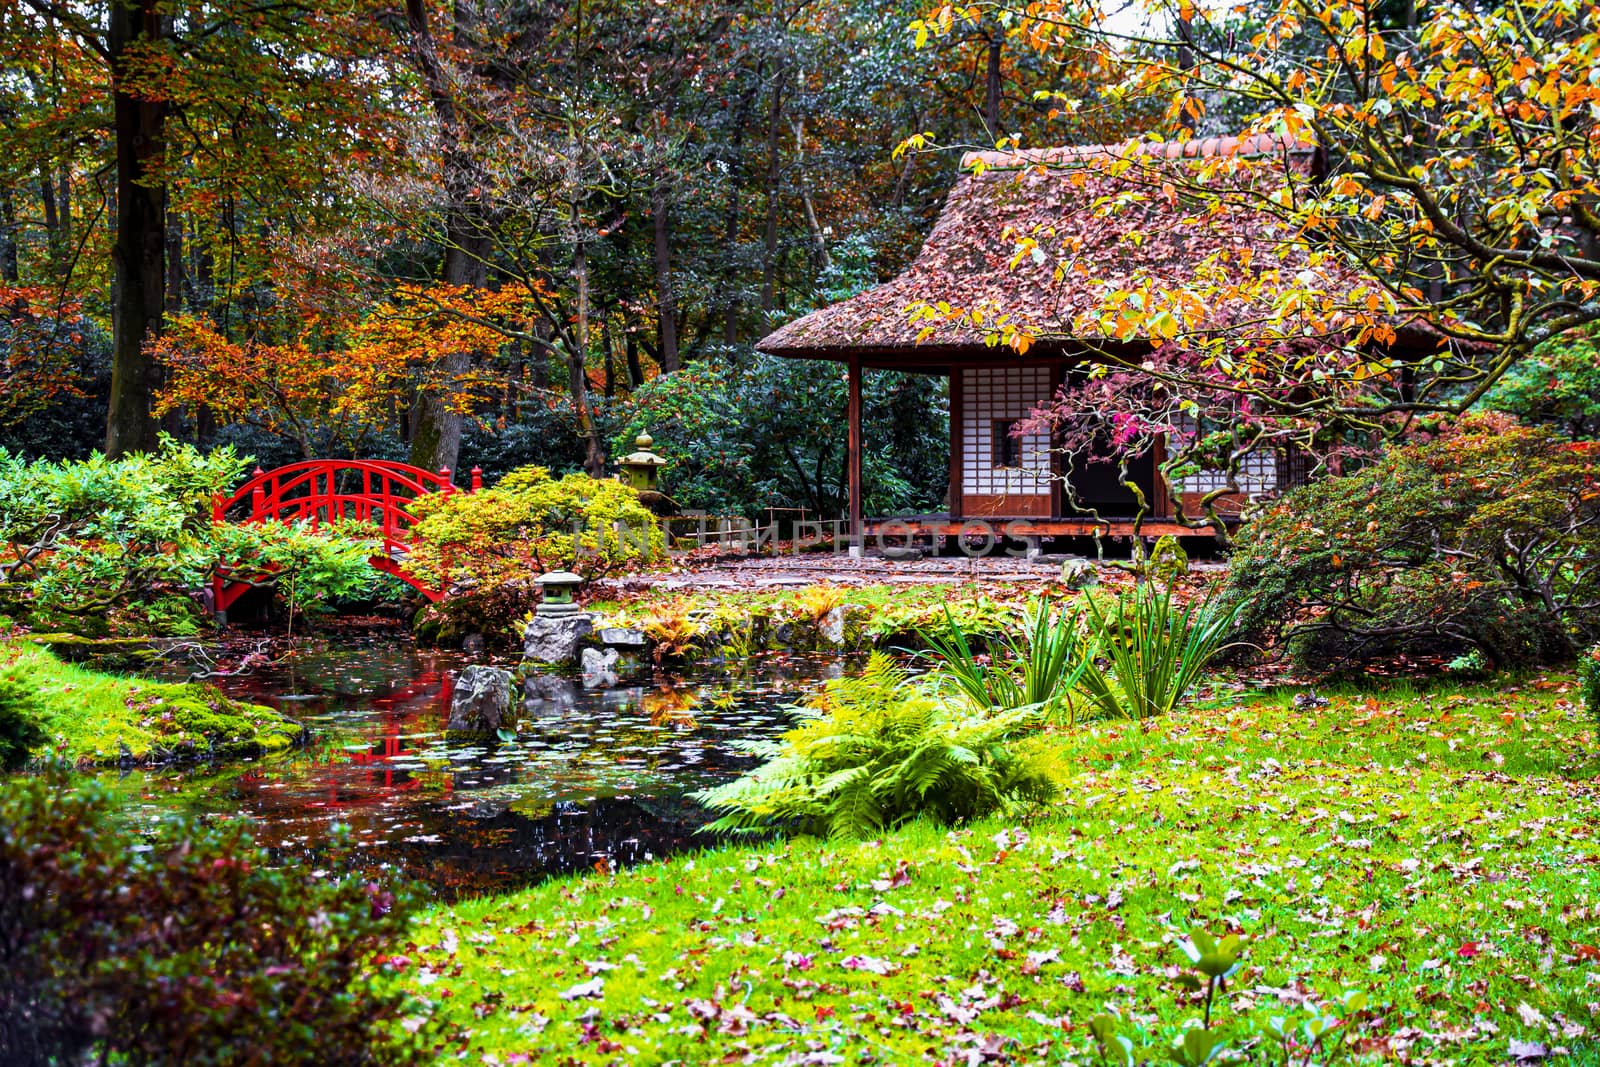 Romantic The Hague public Japanese garden in the autumn season by ankorlight